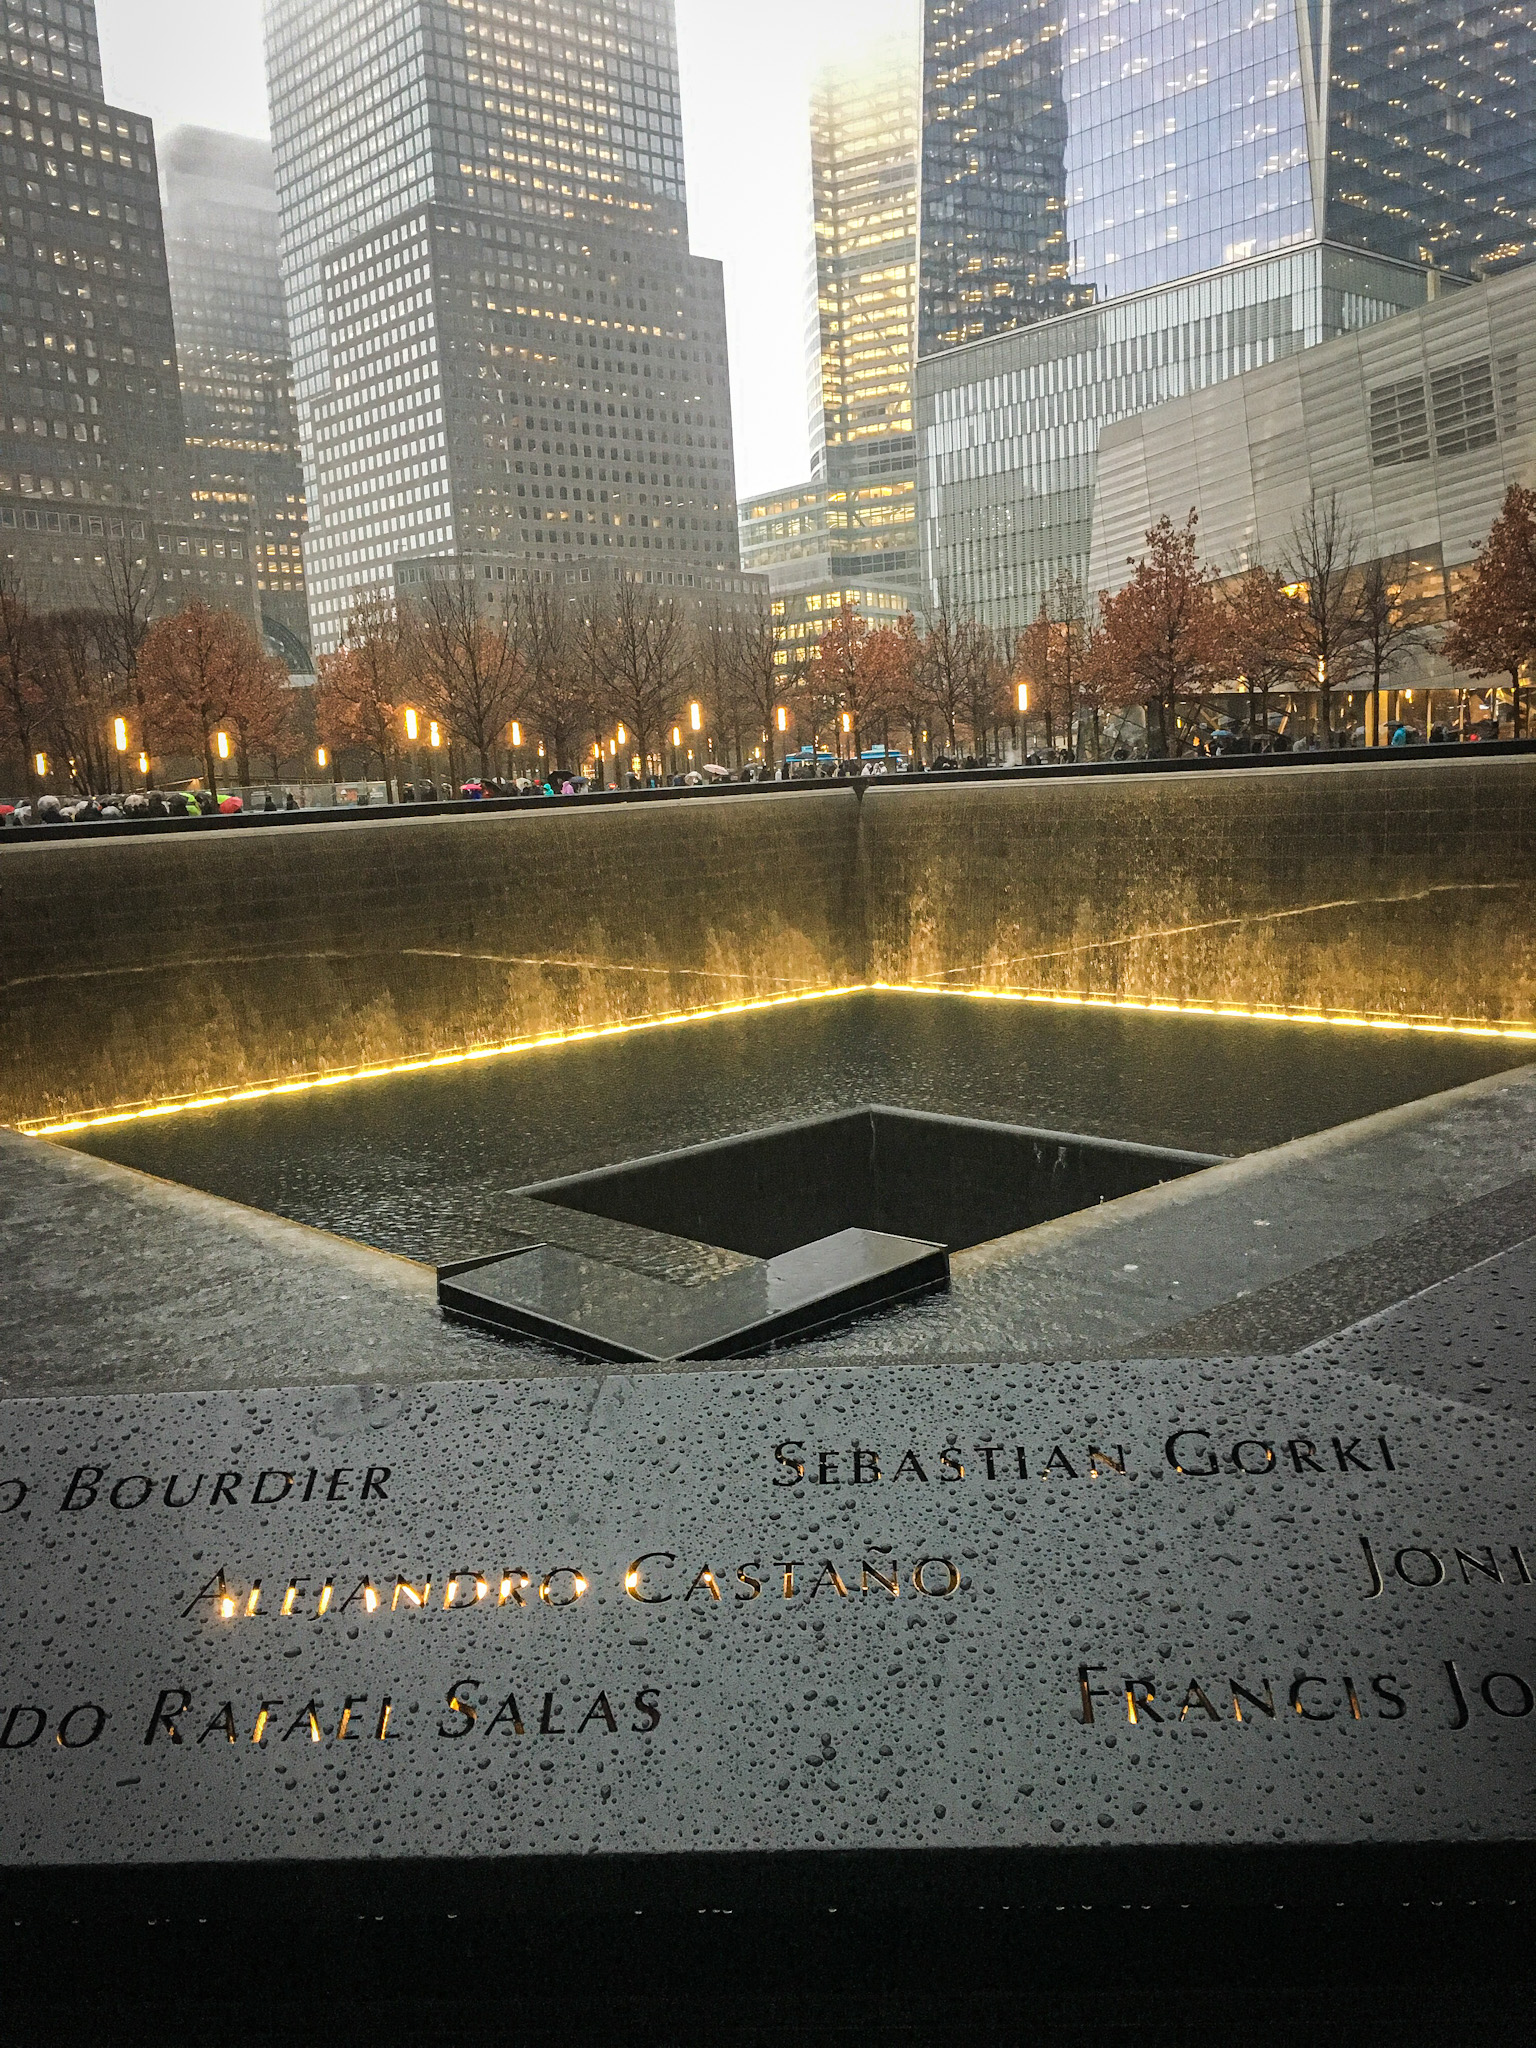 9/11 memorial in New York City